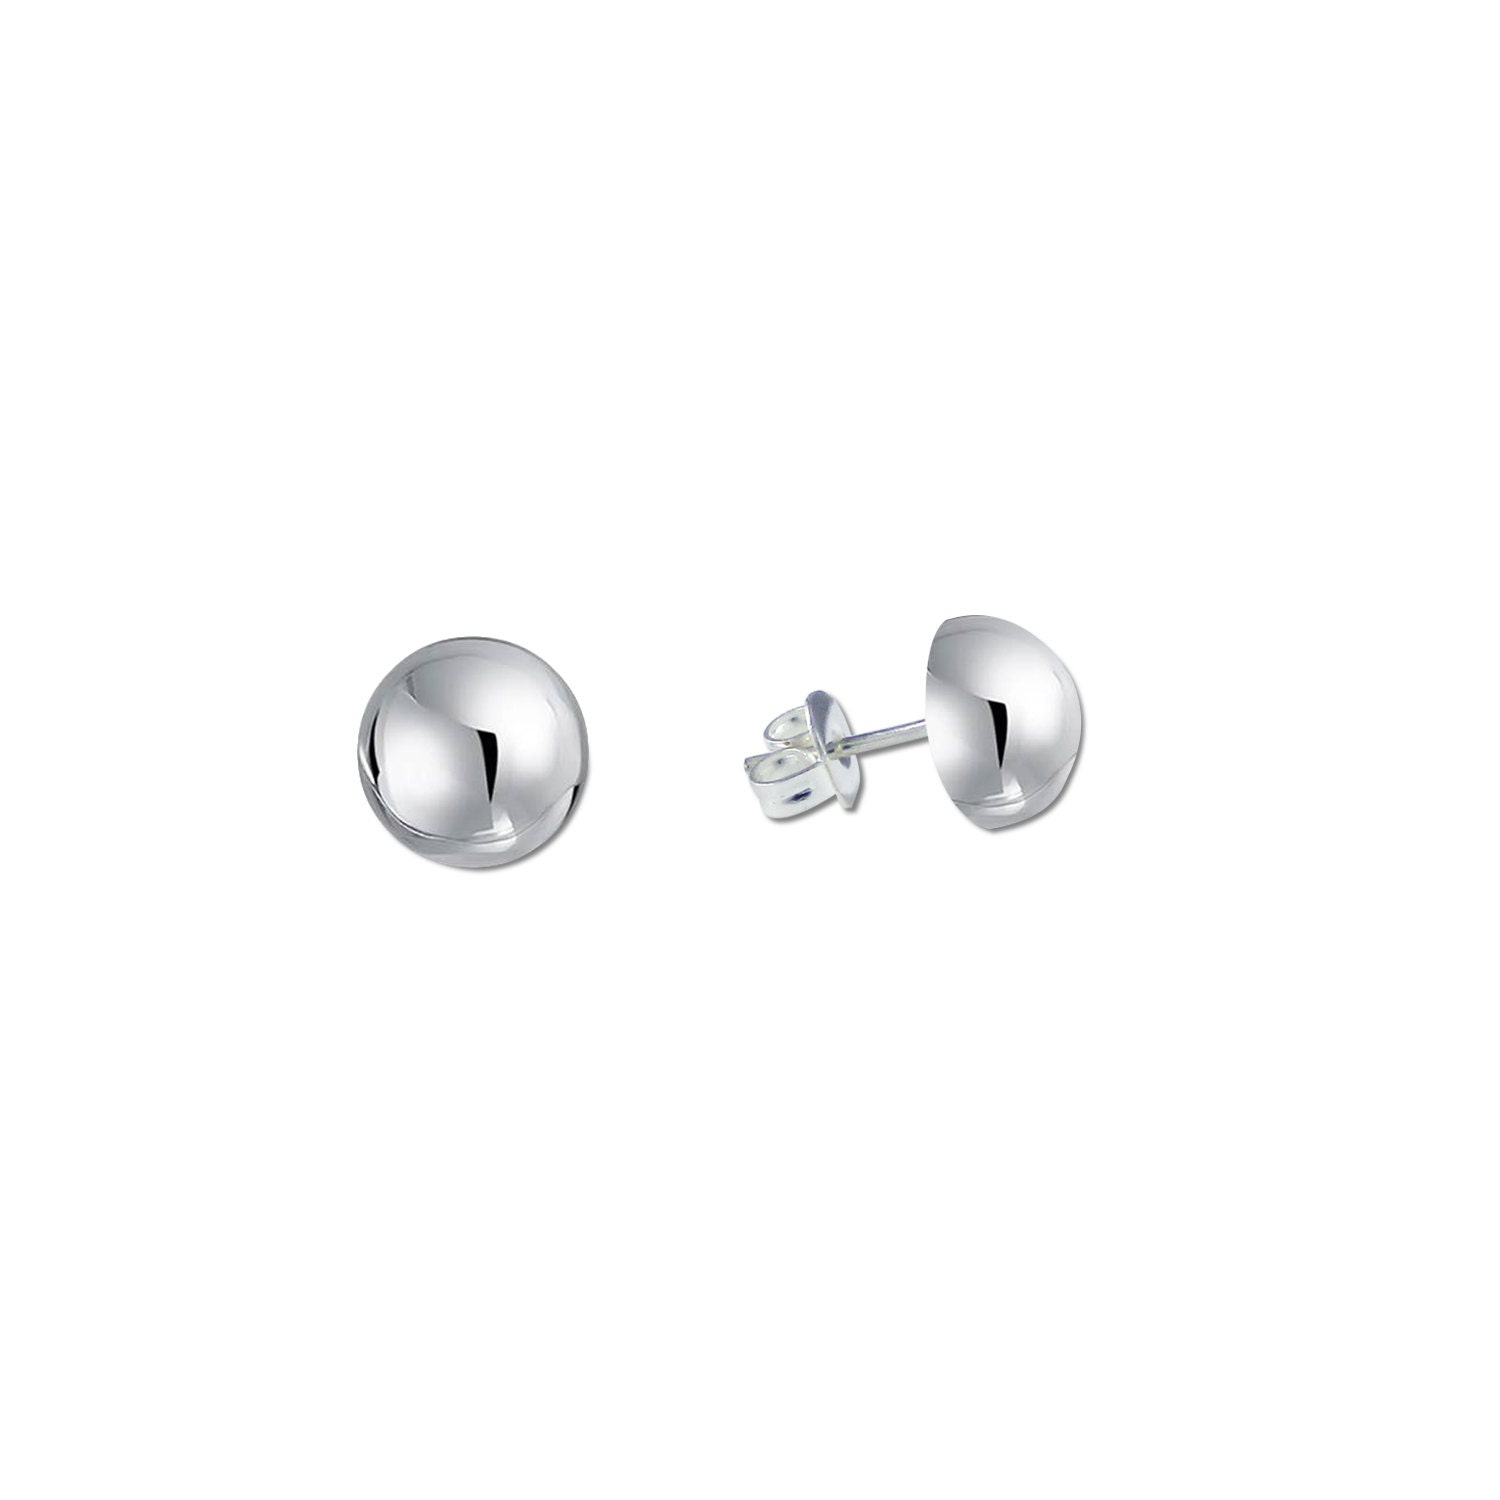 Earring Stabilizer Back, Earring Lifters, Lifter for Large or Heavy Earrings,  Sterling Silver Earring Back Lifters 